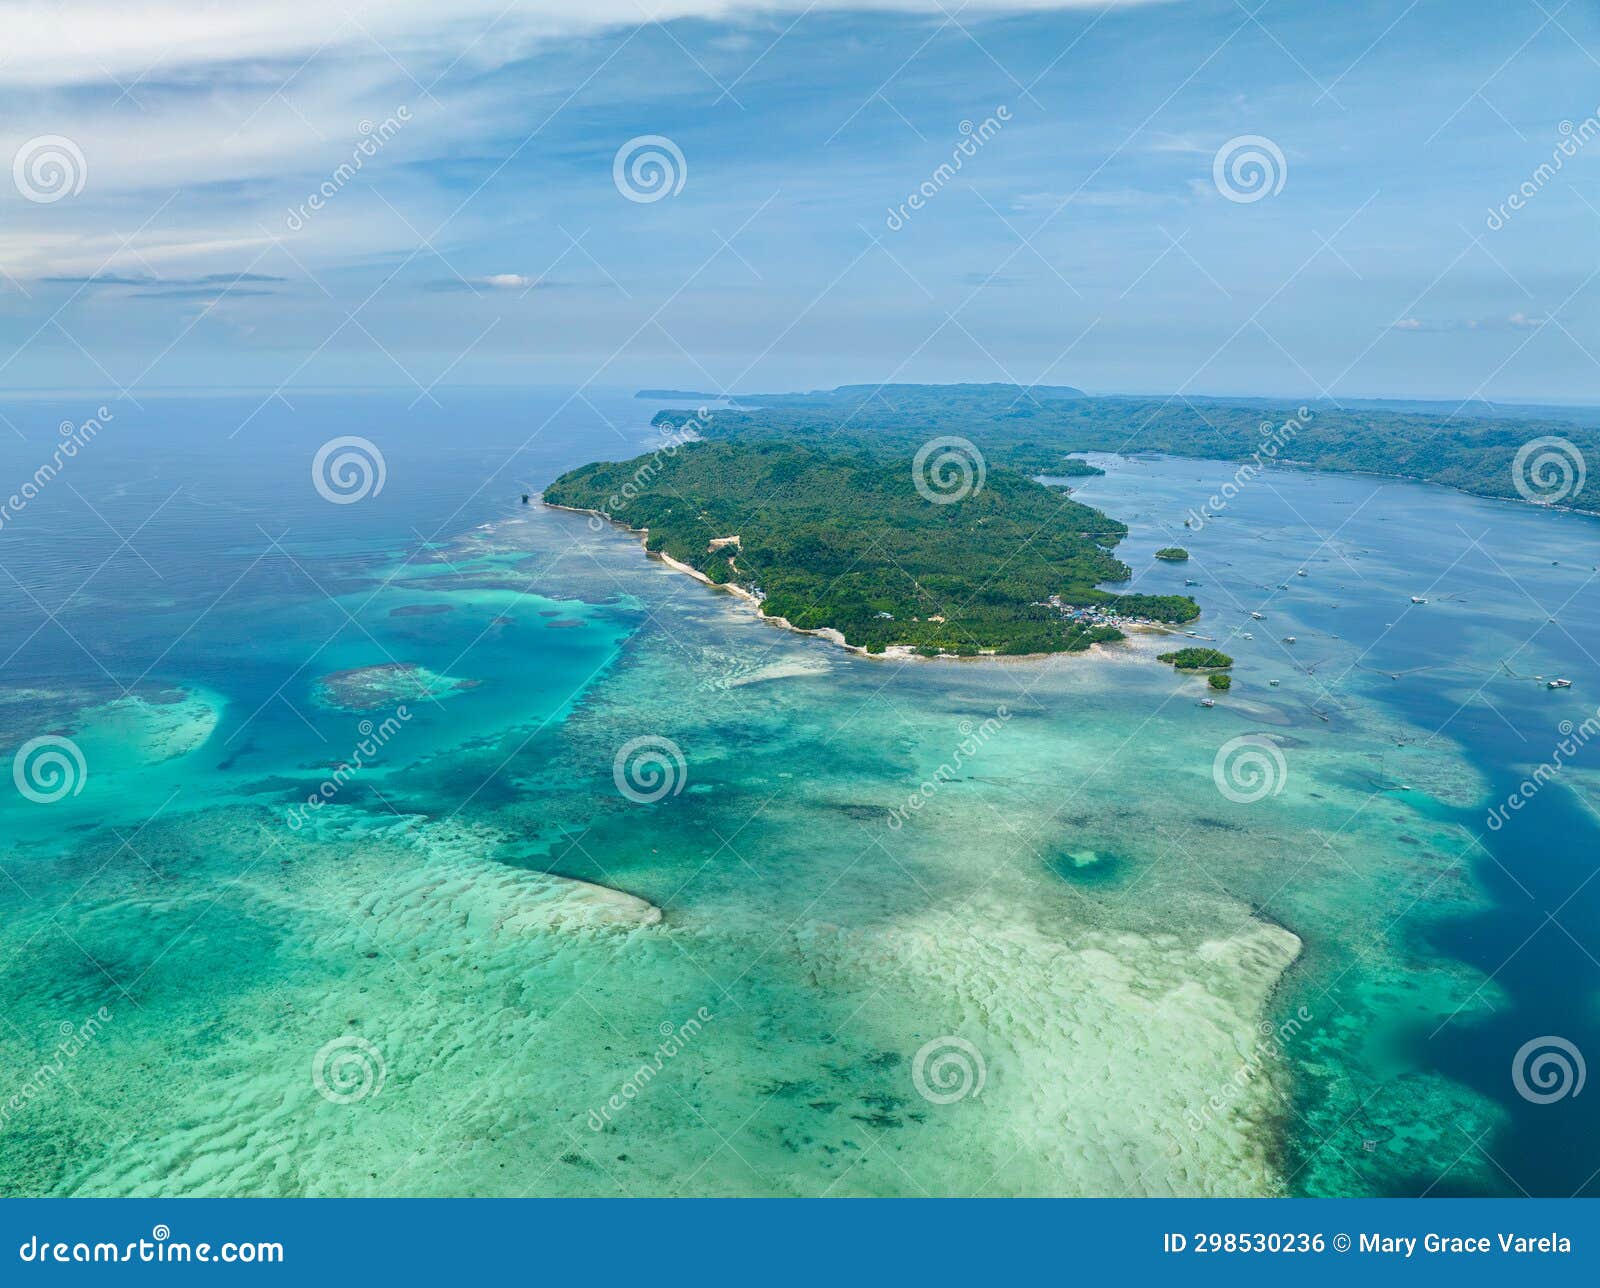 tropical island in barobo, surigao del sur. philippines.